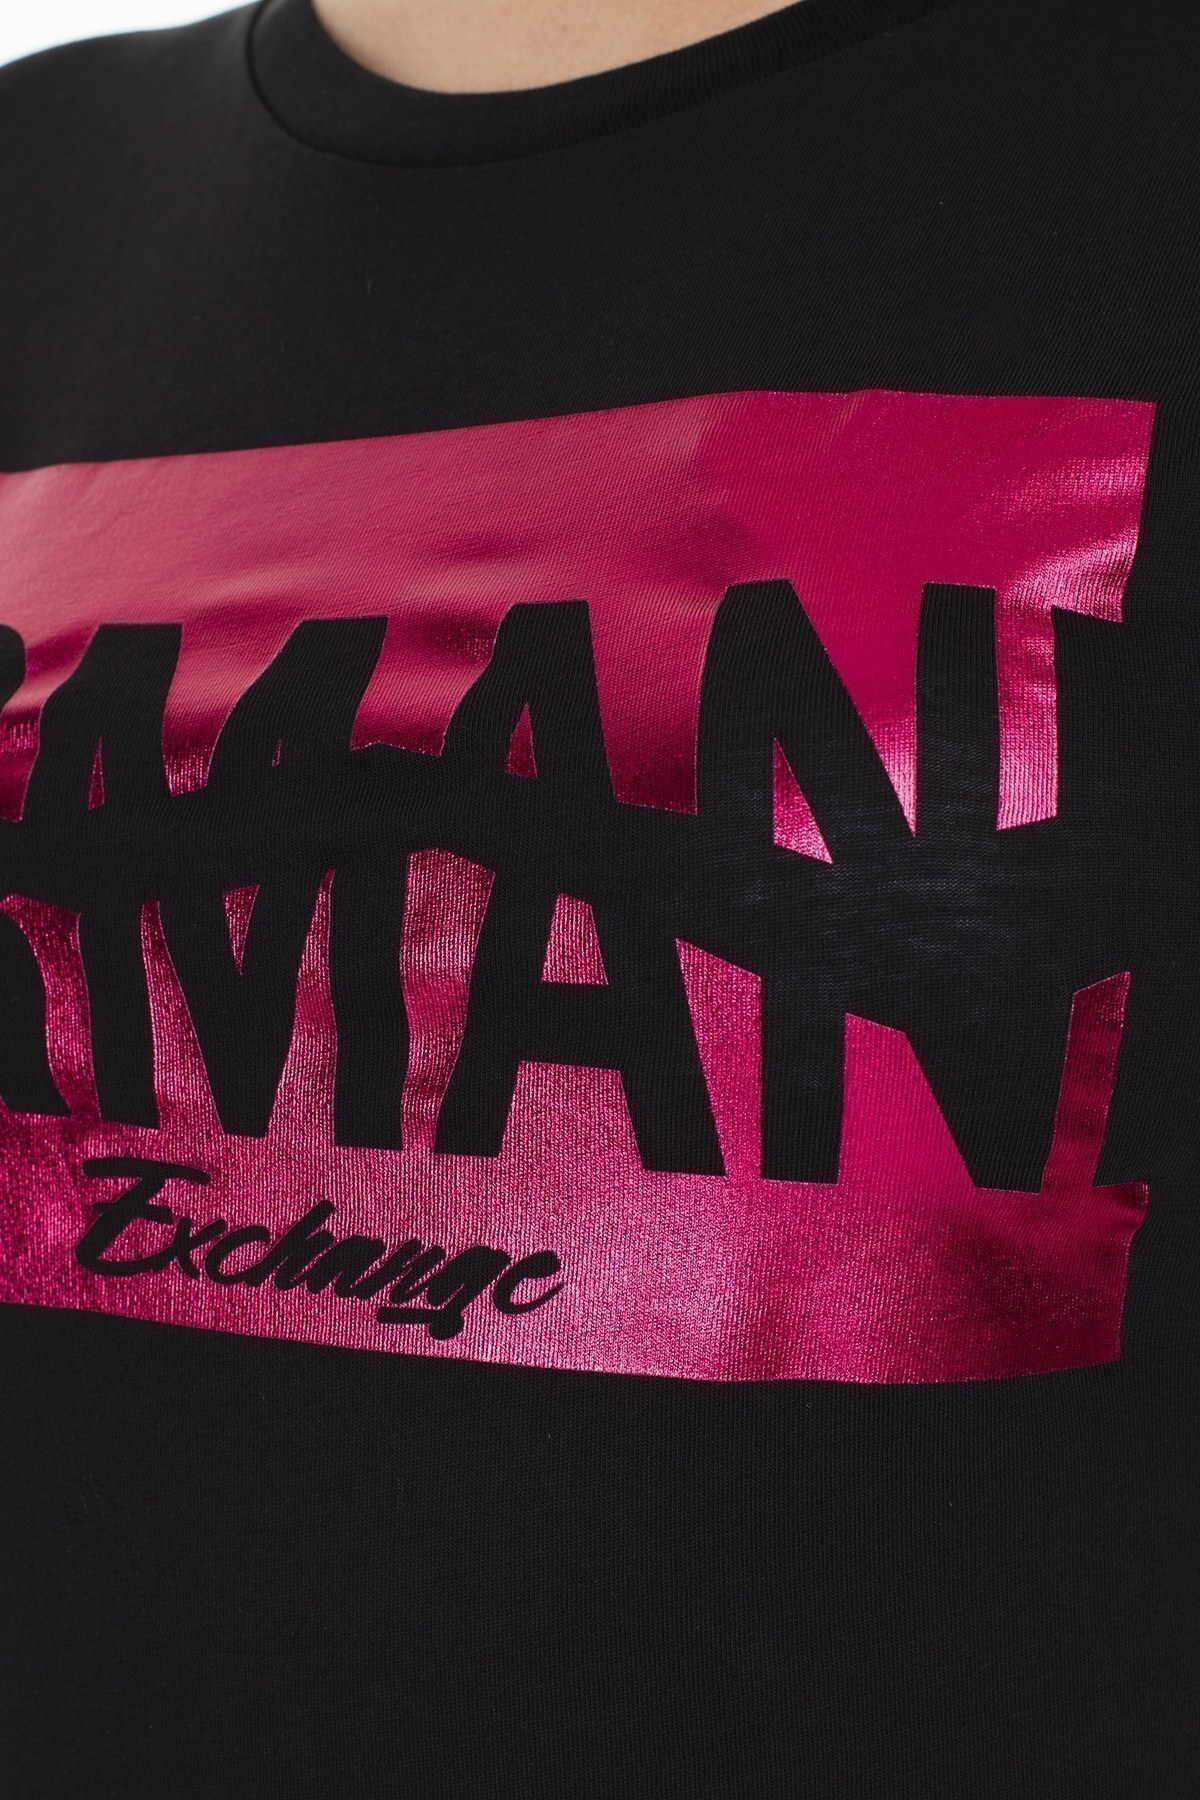 Armani Exchange Kadın T Shirt S 6GYTAB YJG3Z 1200 SİYAH